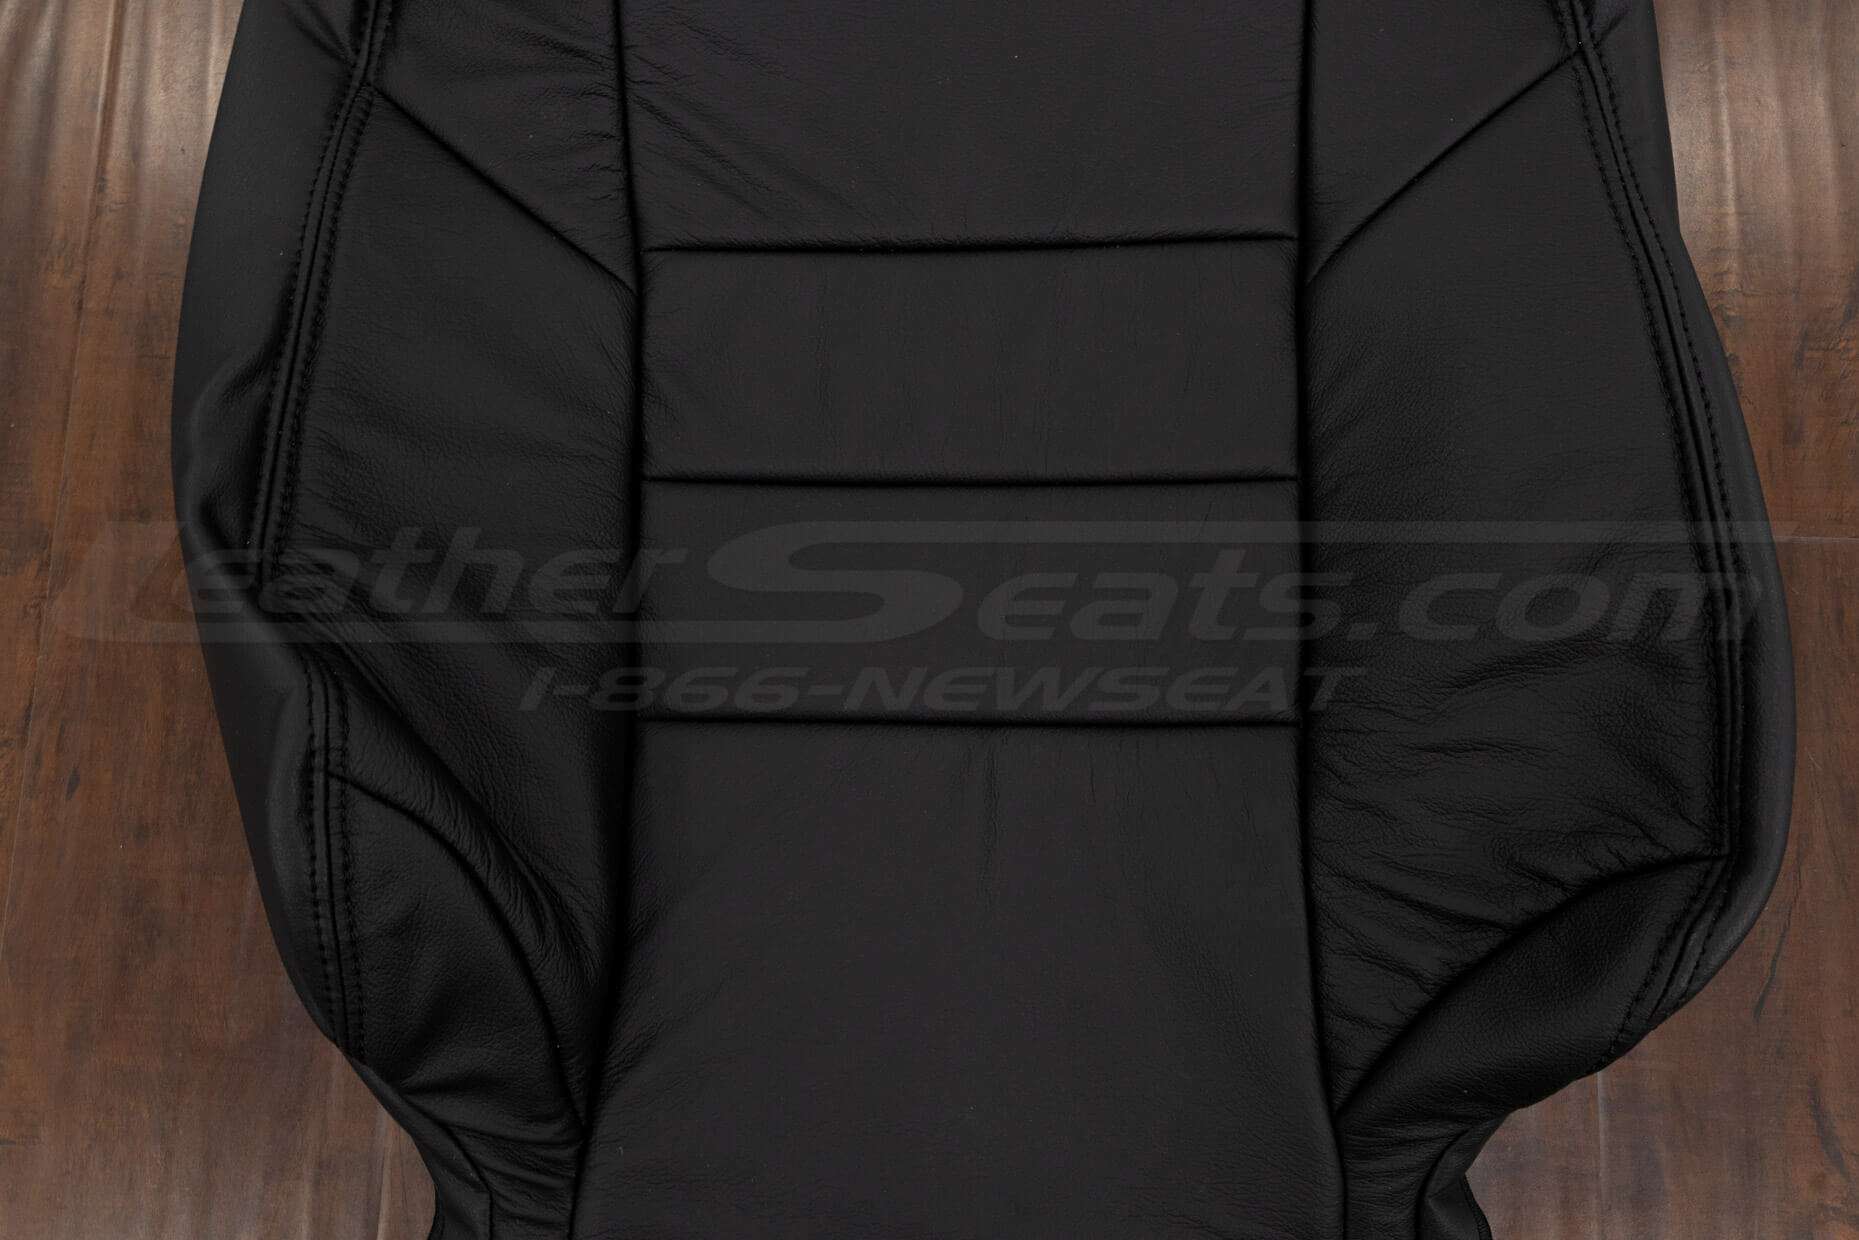 Insert section of Black backrest upholstery